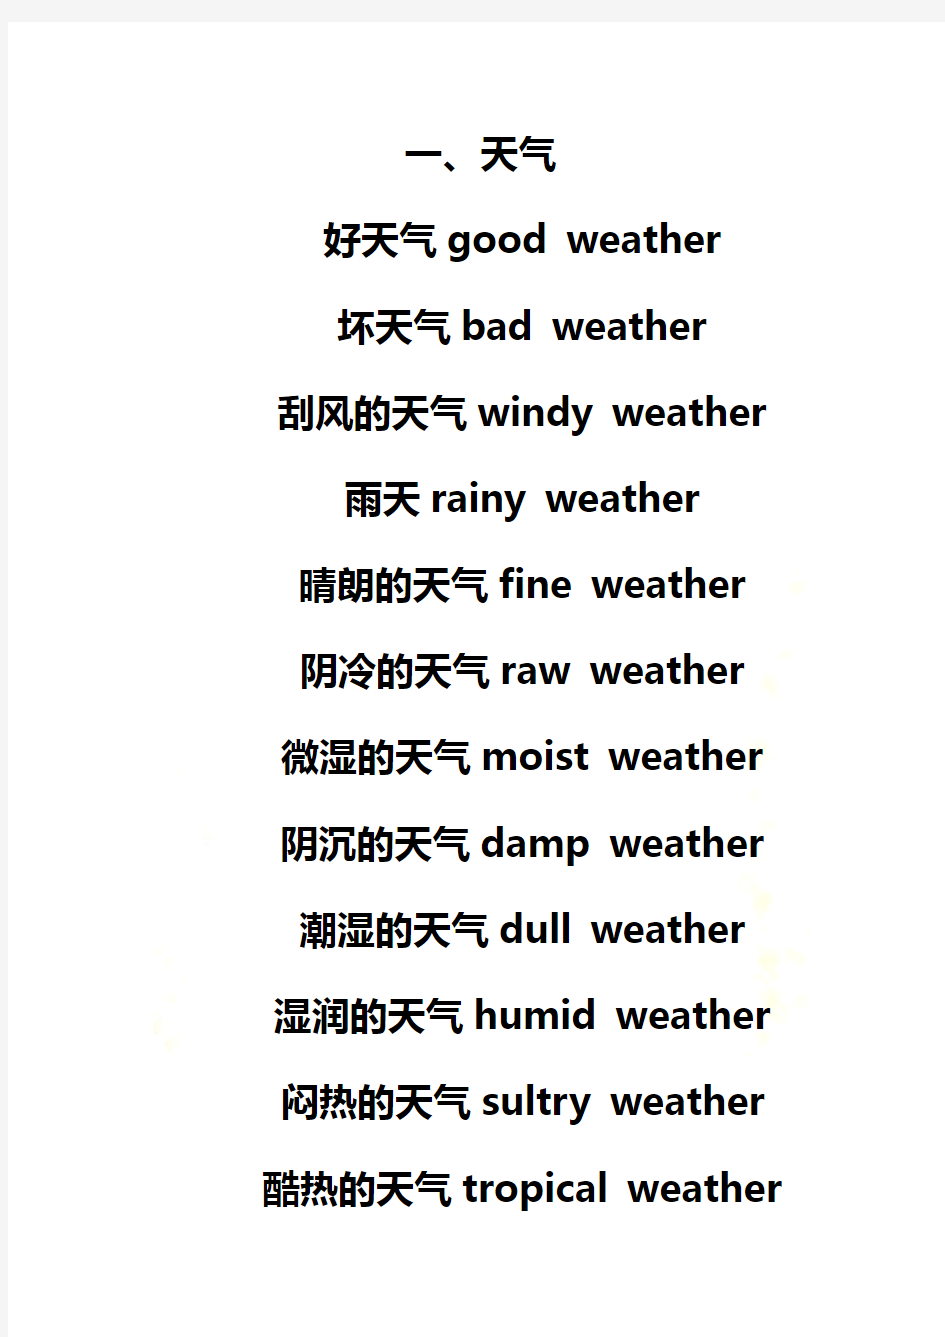 各种天气和气候的英语表达法